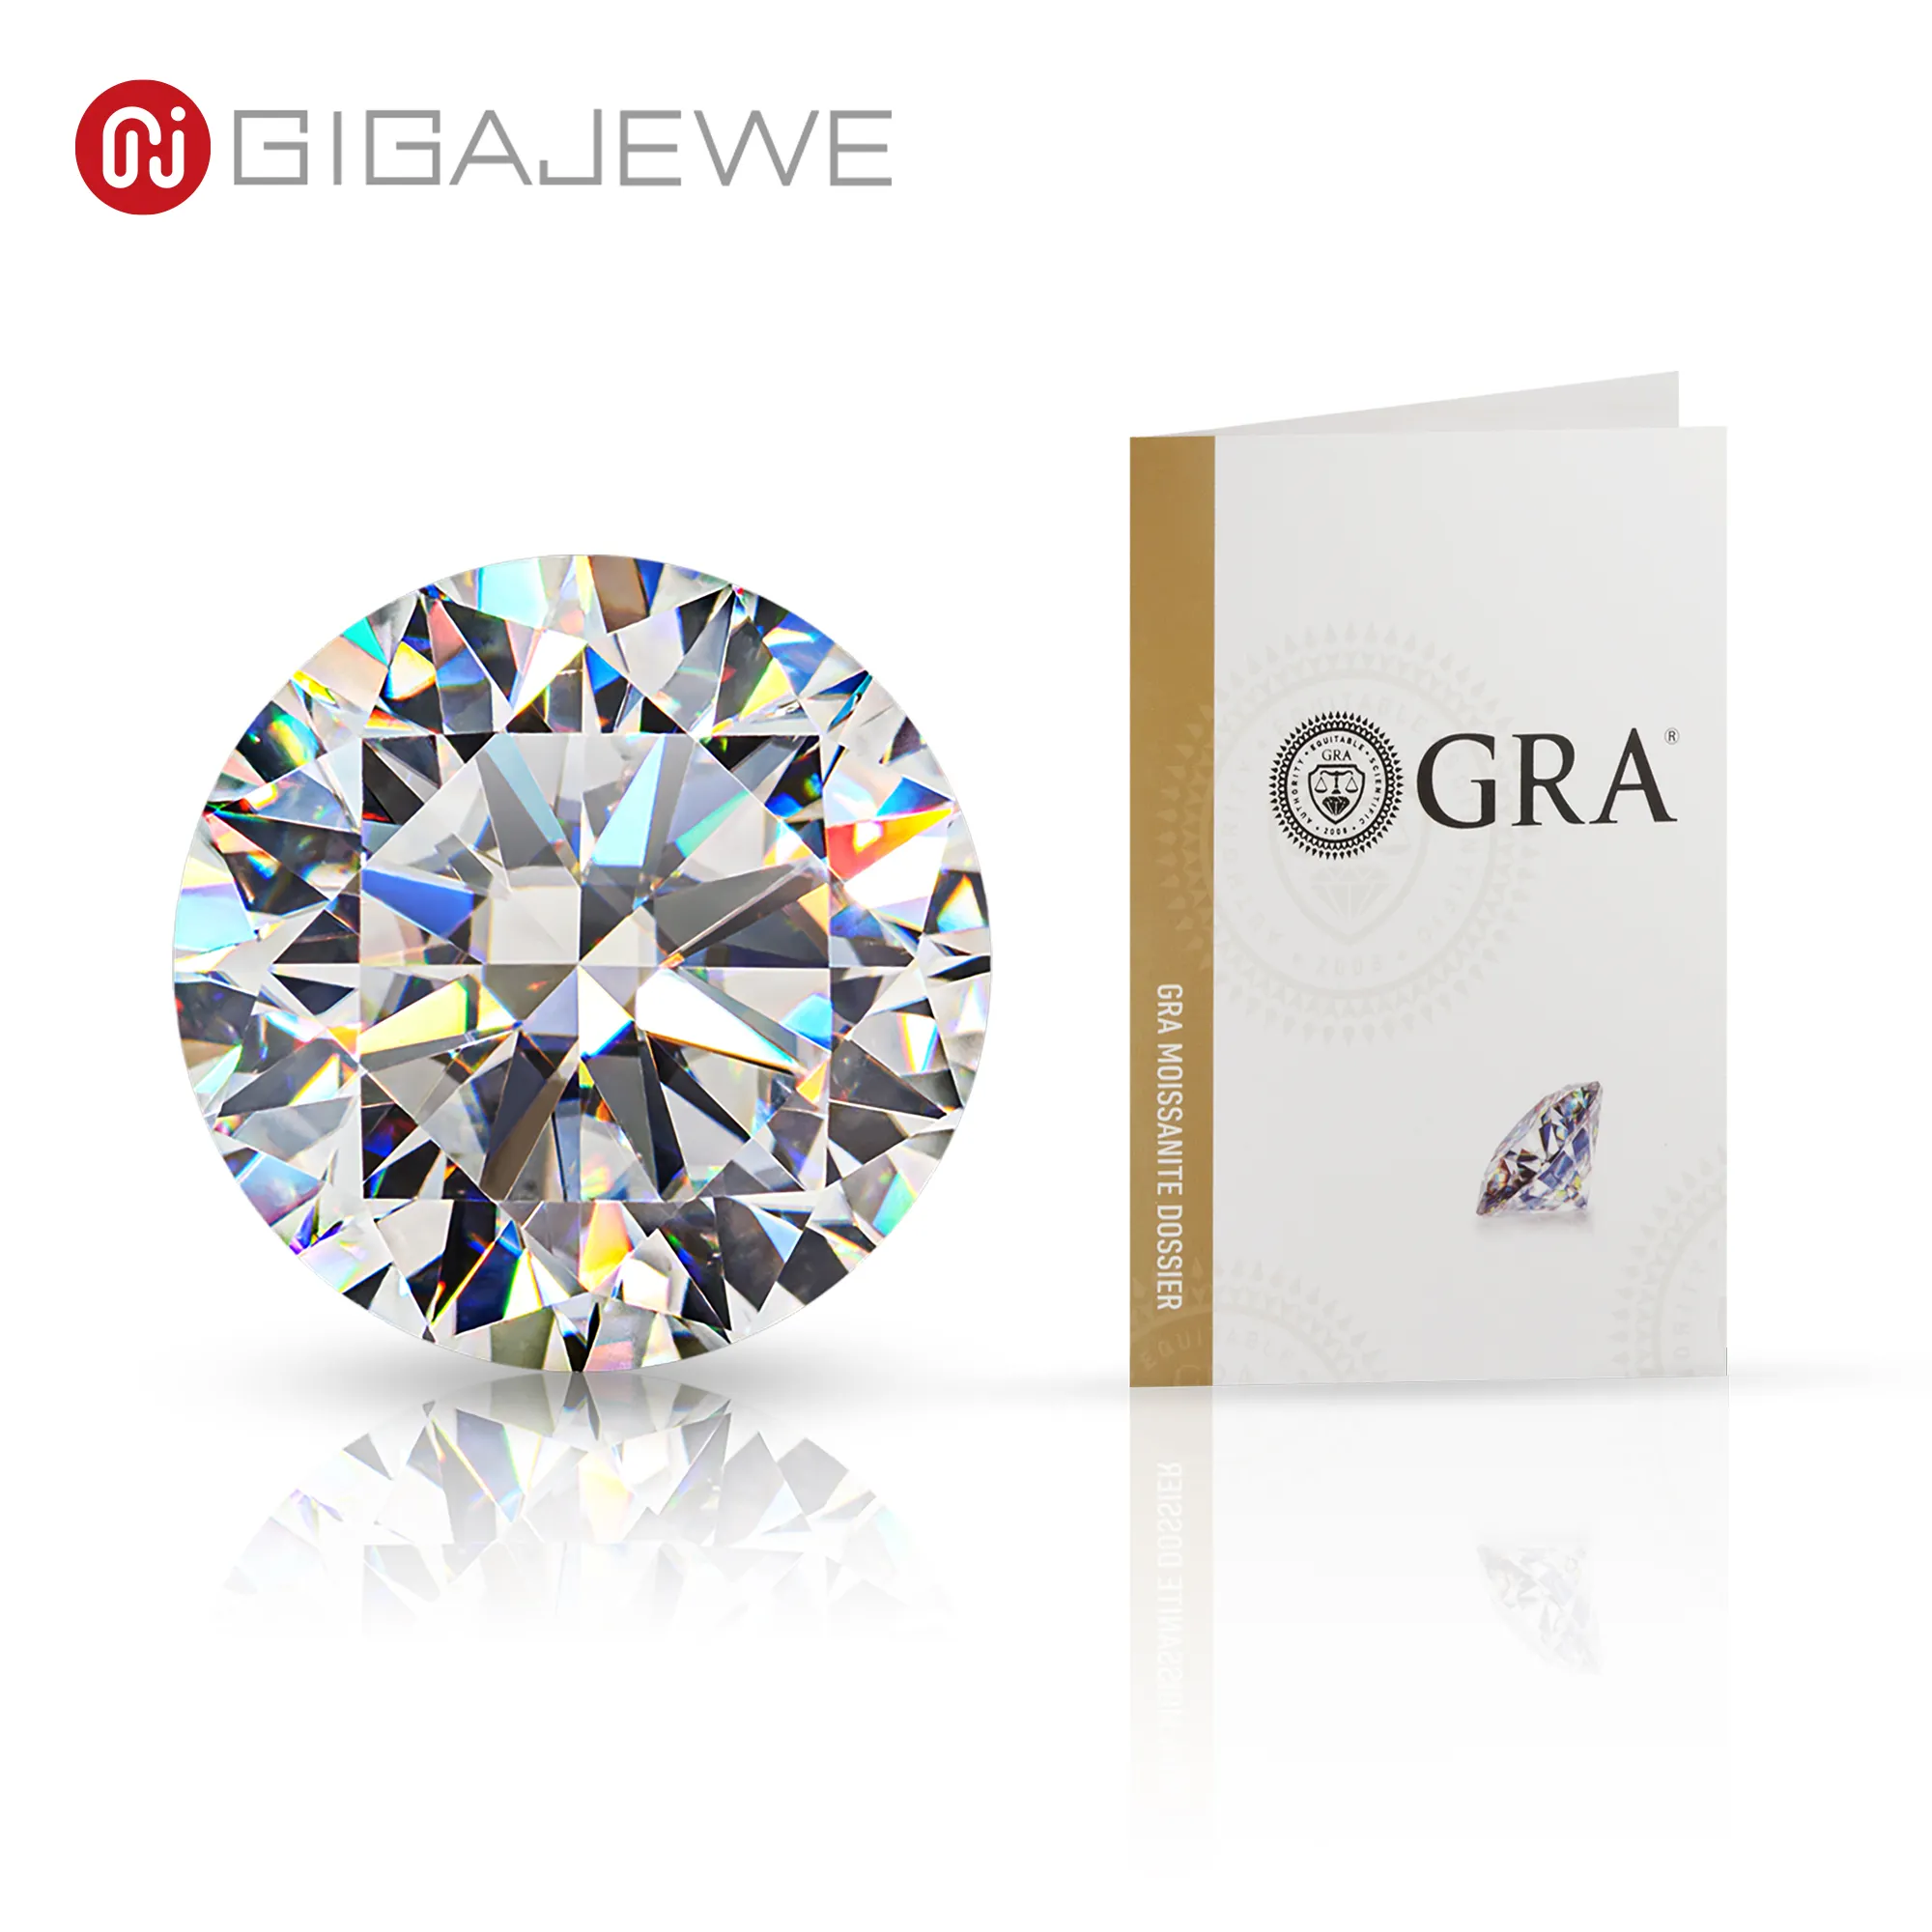 GIGAJEWE all'ingrosso loose Moissanite diamante con certificato di colore bianco DEF VVS1 chiarezza per la creazione di gioielli